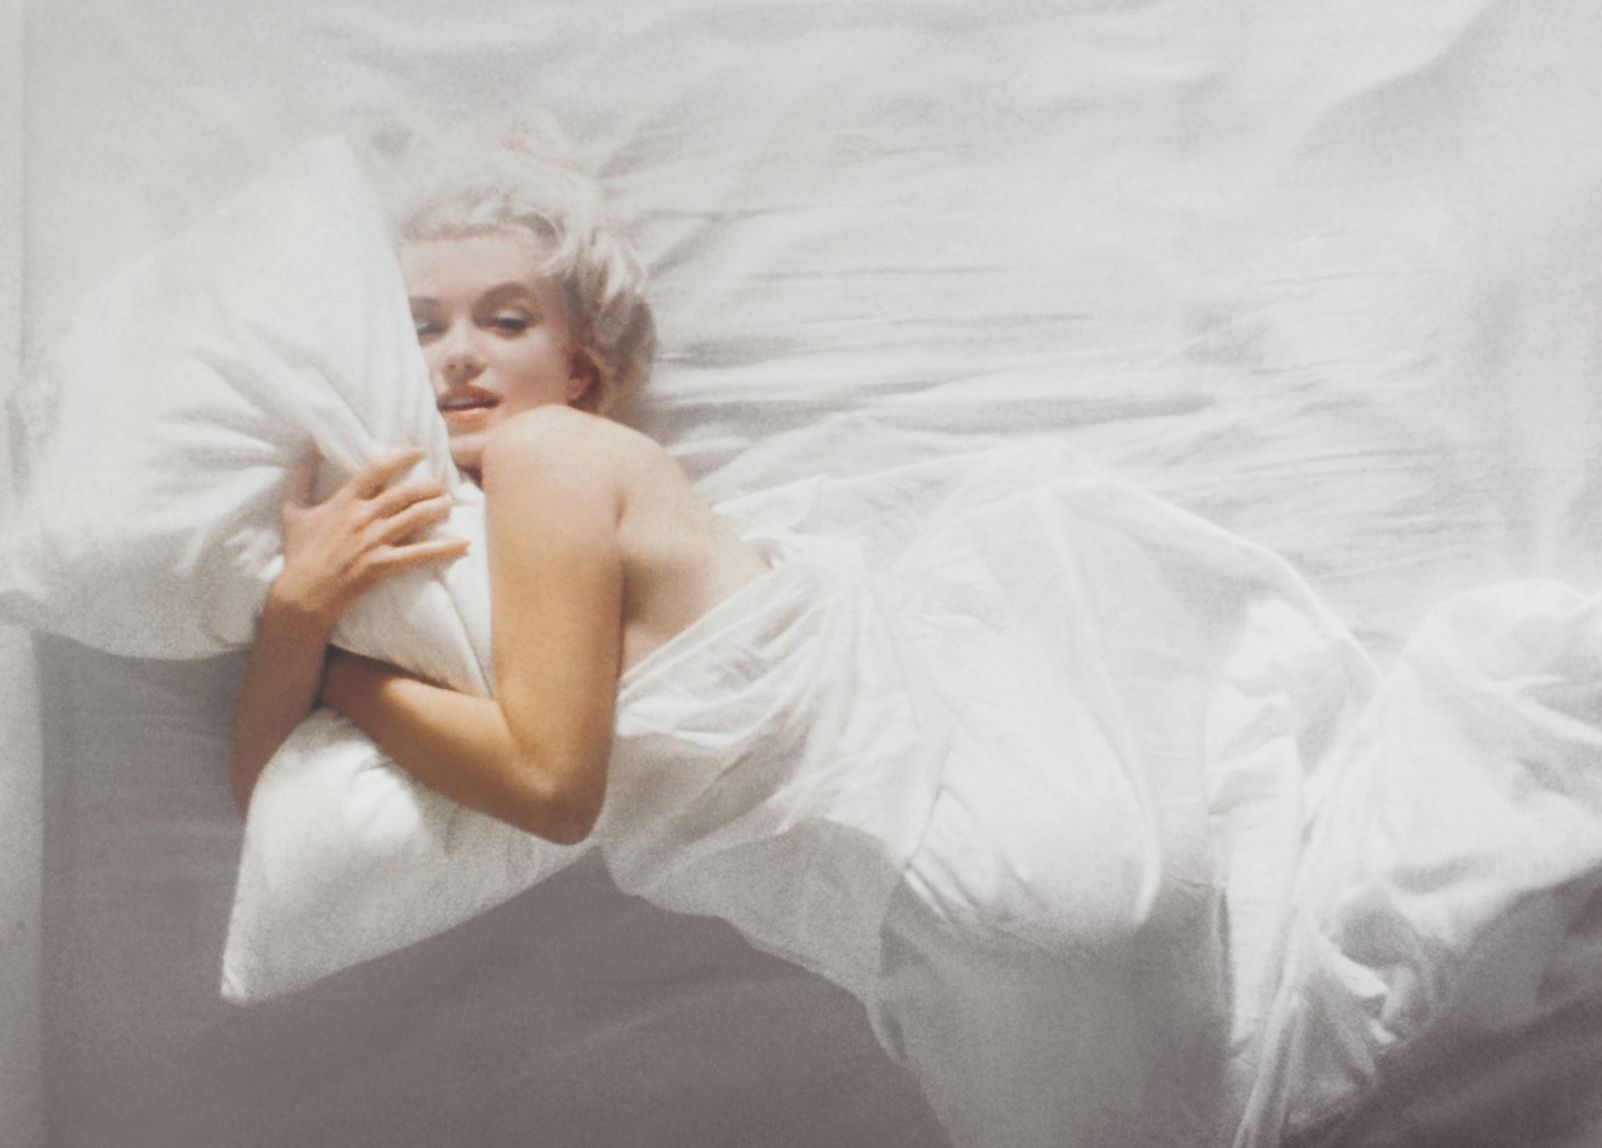 Marilyn Monroe tenía 35 años cuando se tomaron estas fotografías y estaba en lo más alto de su carrera profesional (Douglas Kirkland - Heritage Auctions - Christie's)